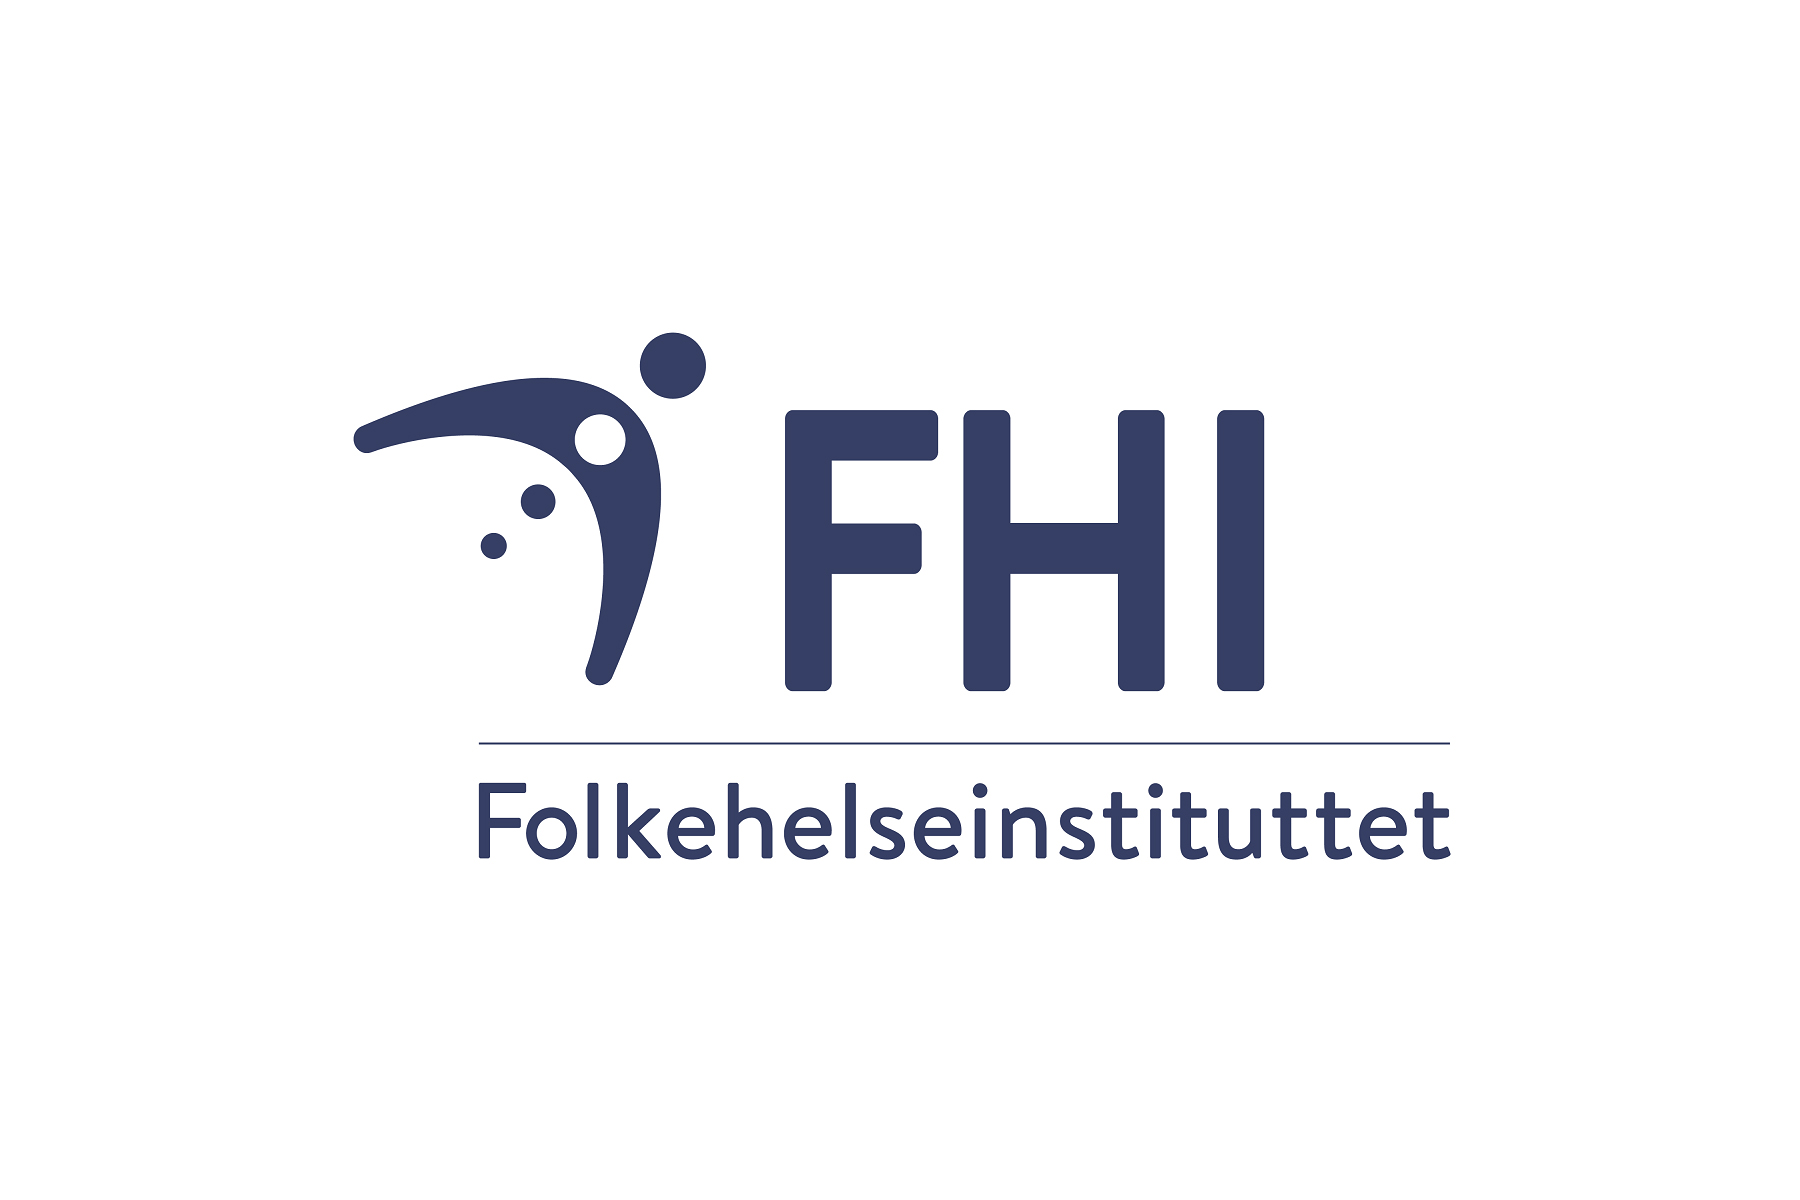 Folkehelseinstituttet logo